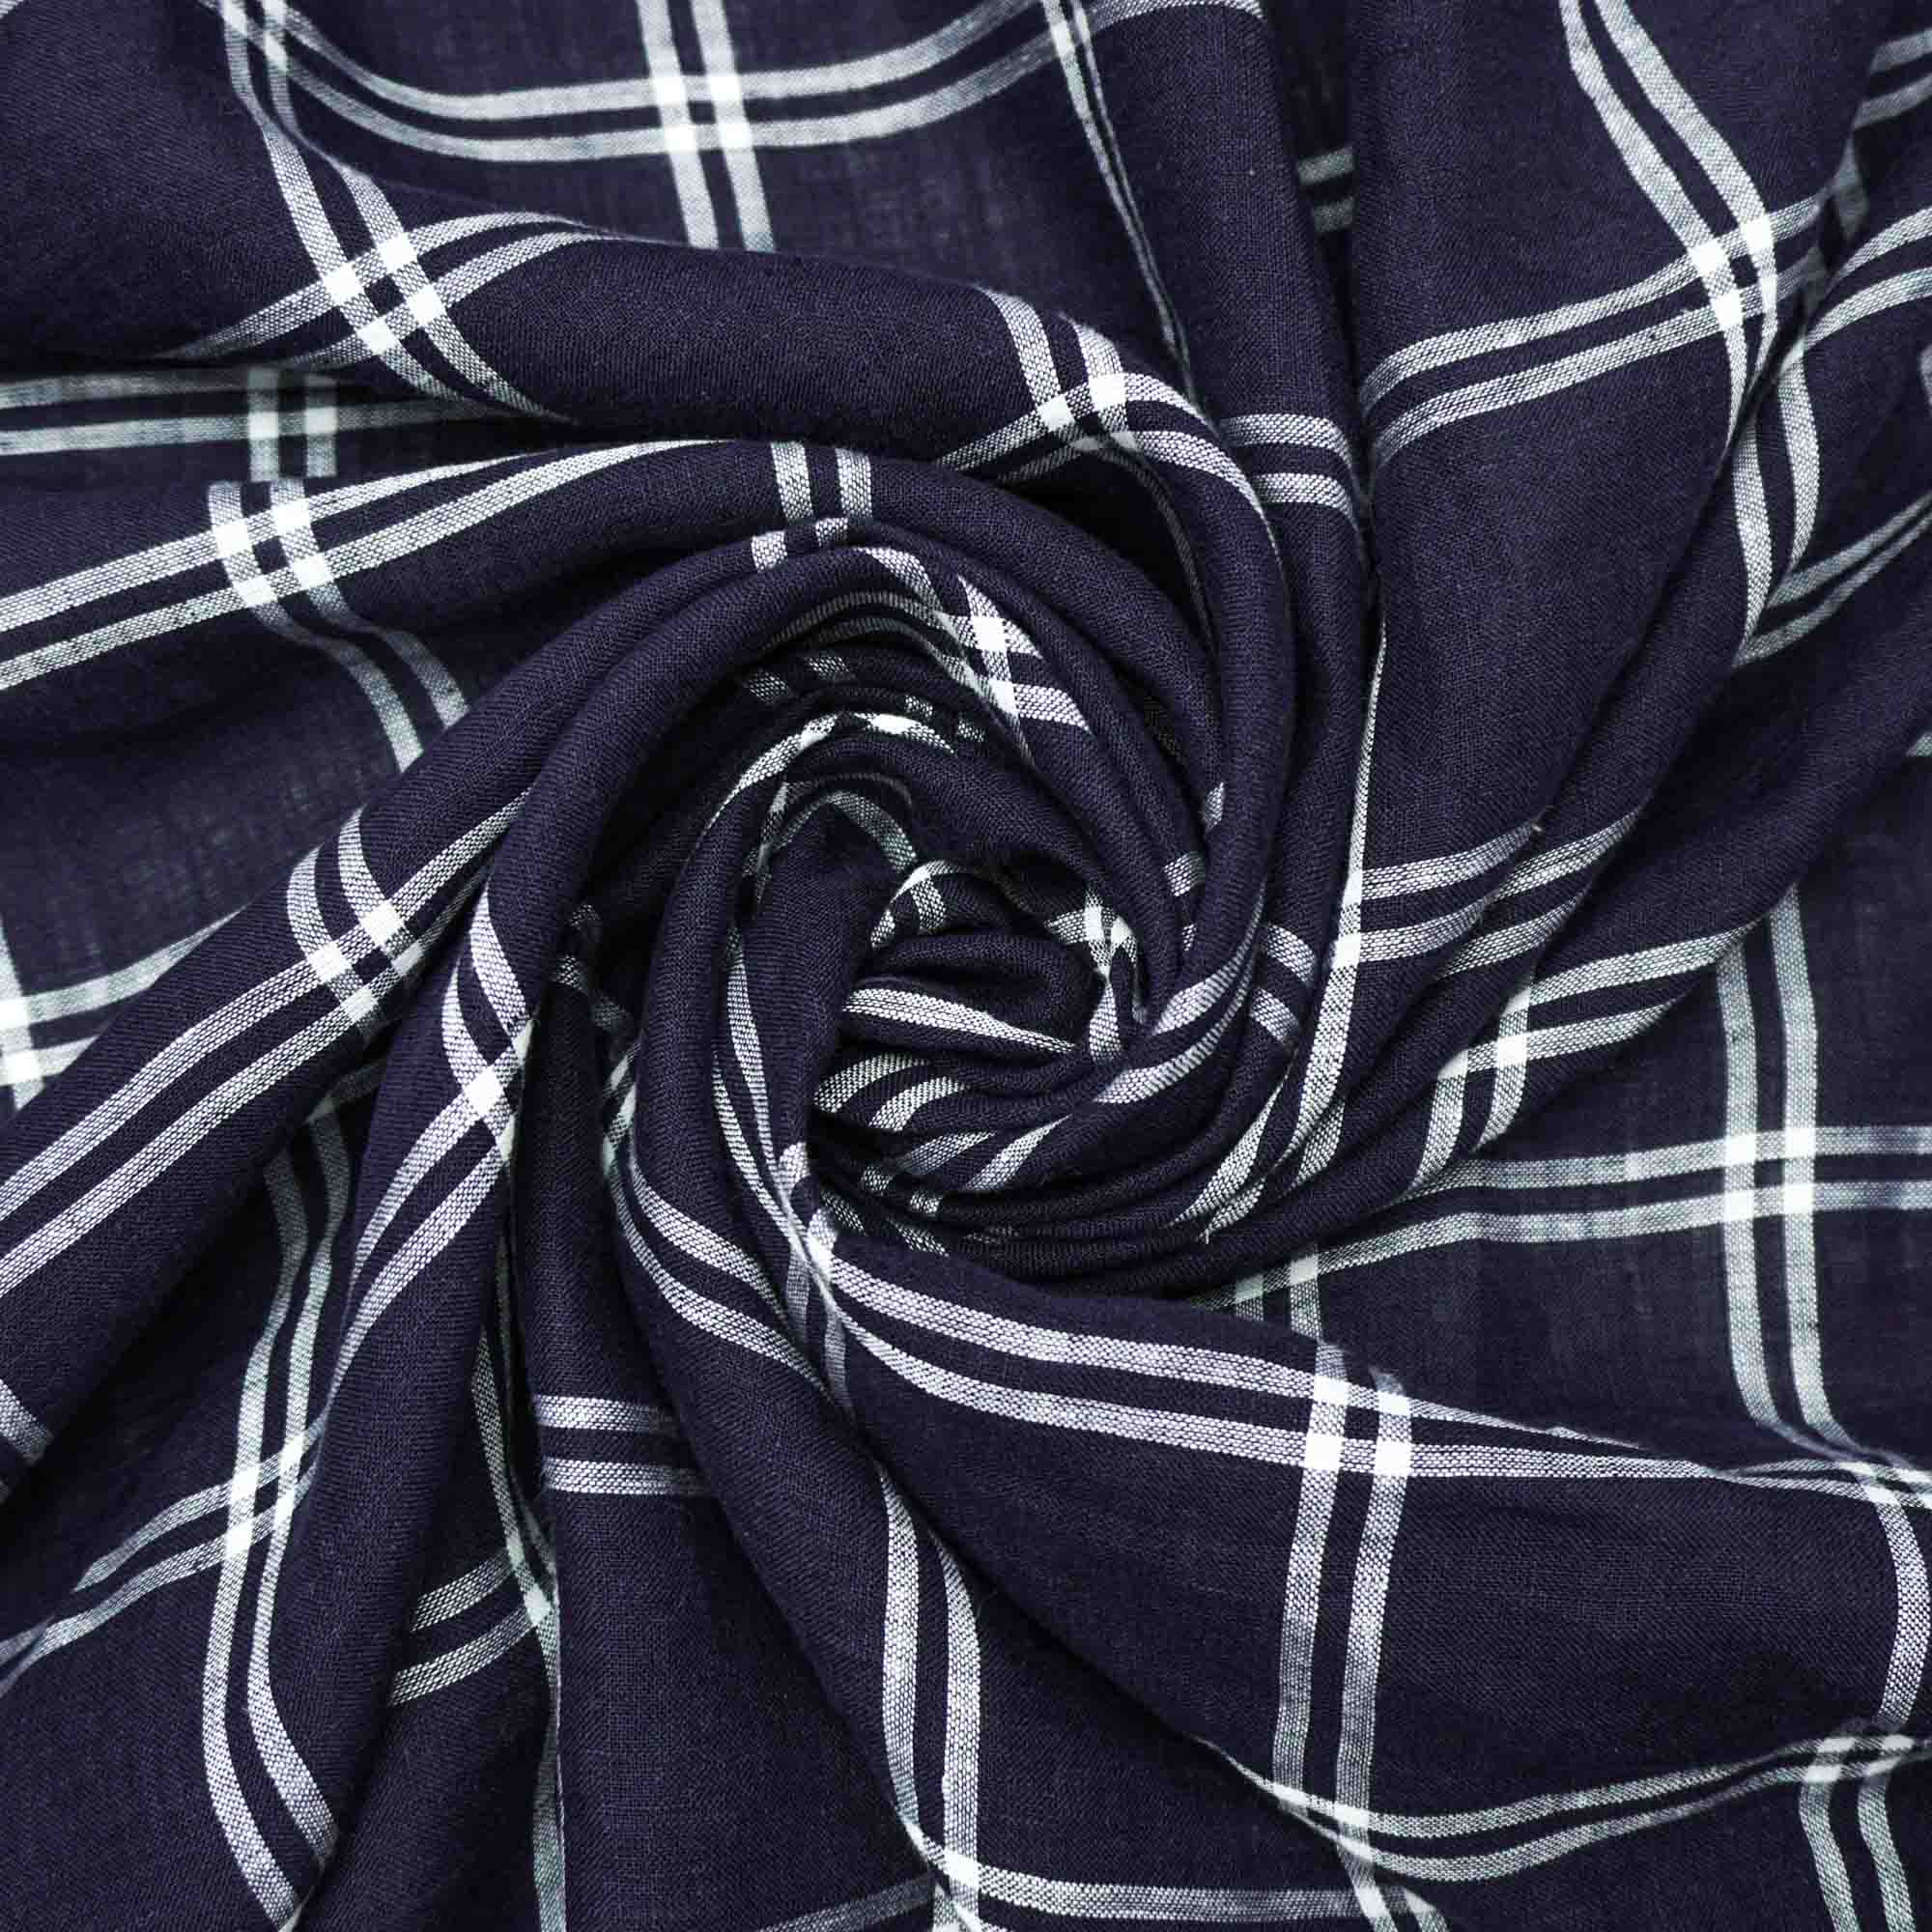 Tecido linho puro azul marinho xadrez (tecido italiano legítimo)